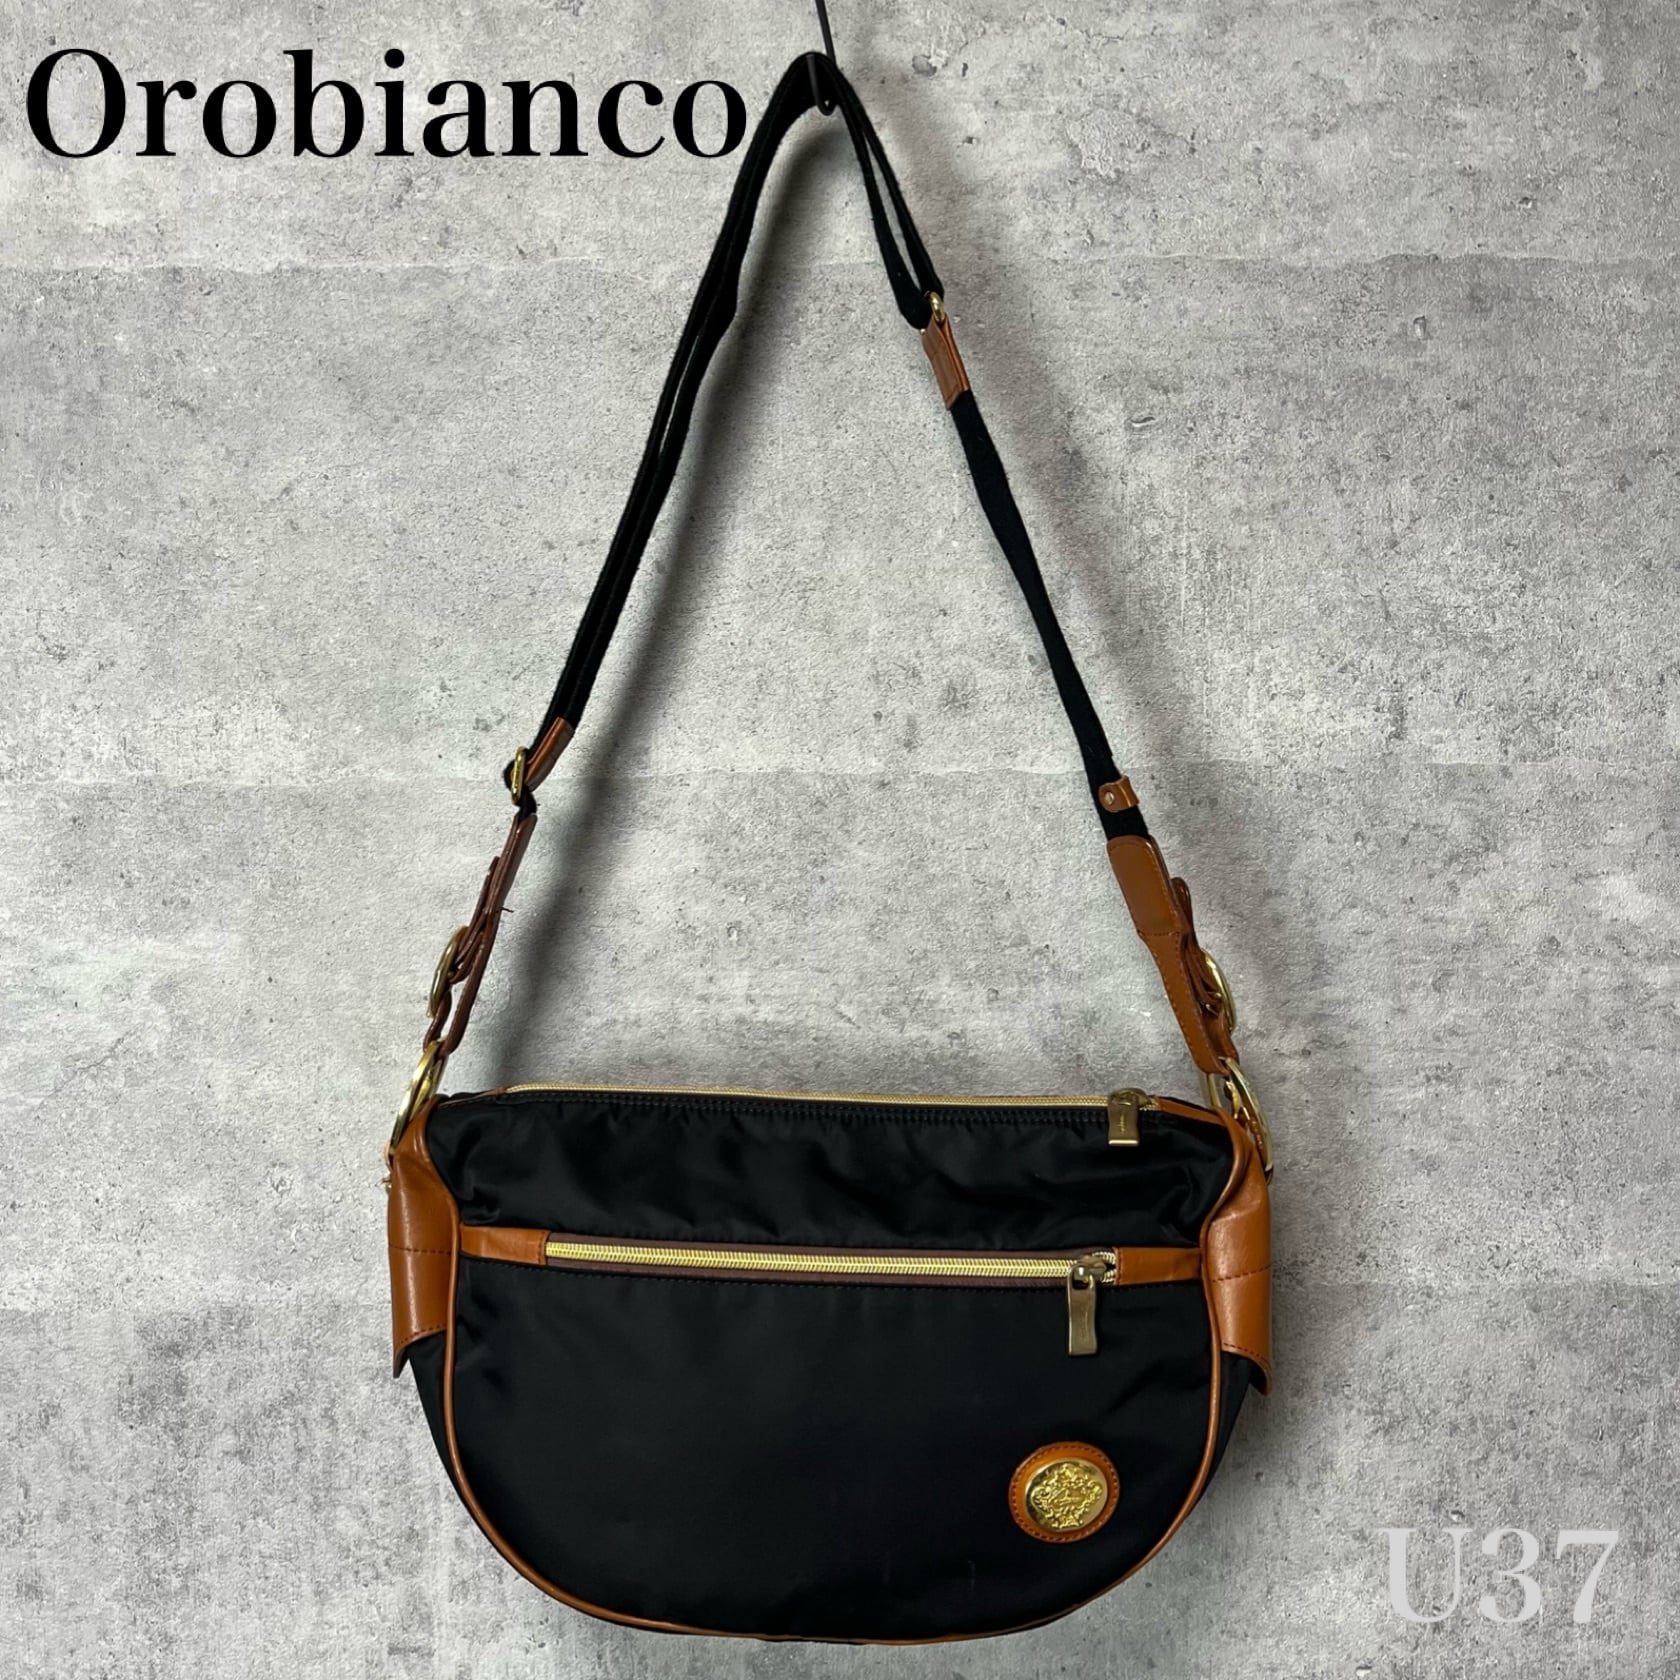 オロビアンコ Orobianco ショルダー バッグ 鞄 かばん 黒 茶 ▽ U37